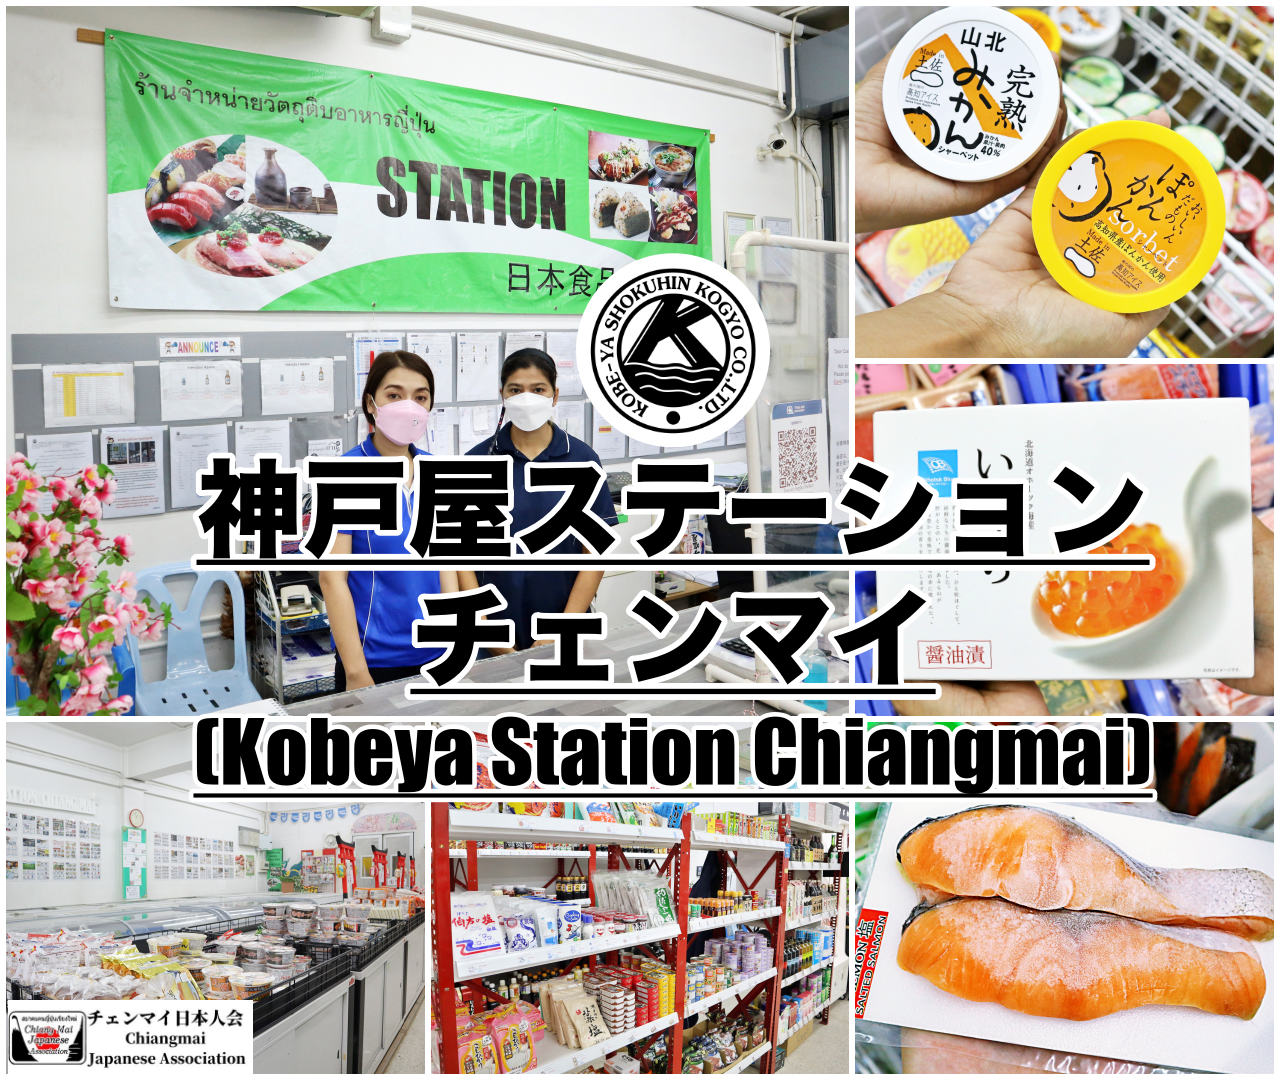 神戸屋ステーション・チェンマイ (Kobeya Station Chiangmai)